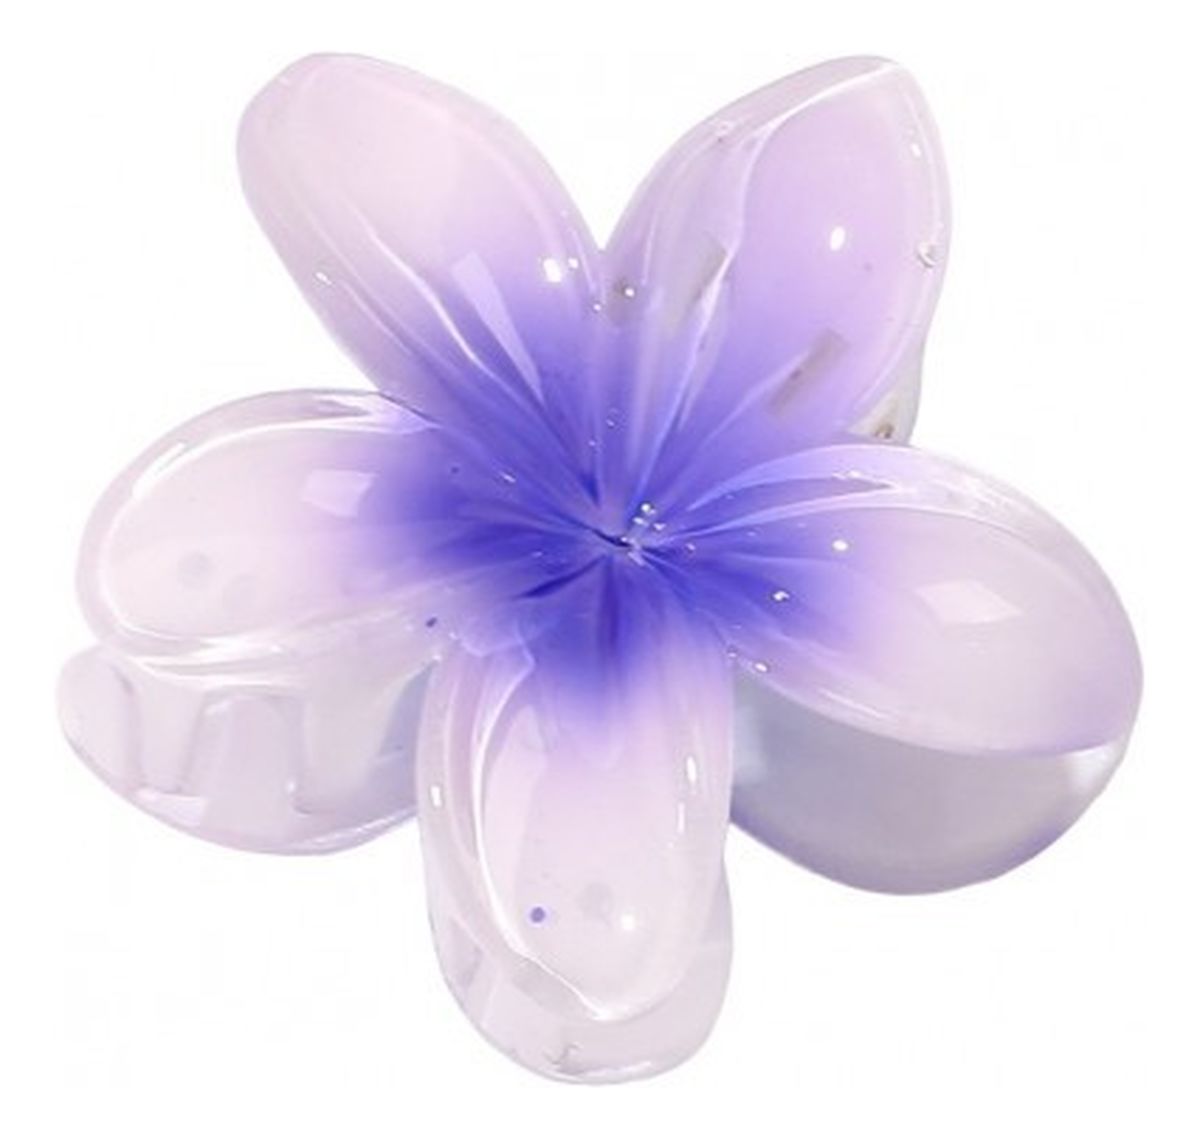 Klamra do włosów kwiat-fioletowe ombre (sp269f) 1szt